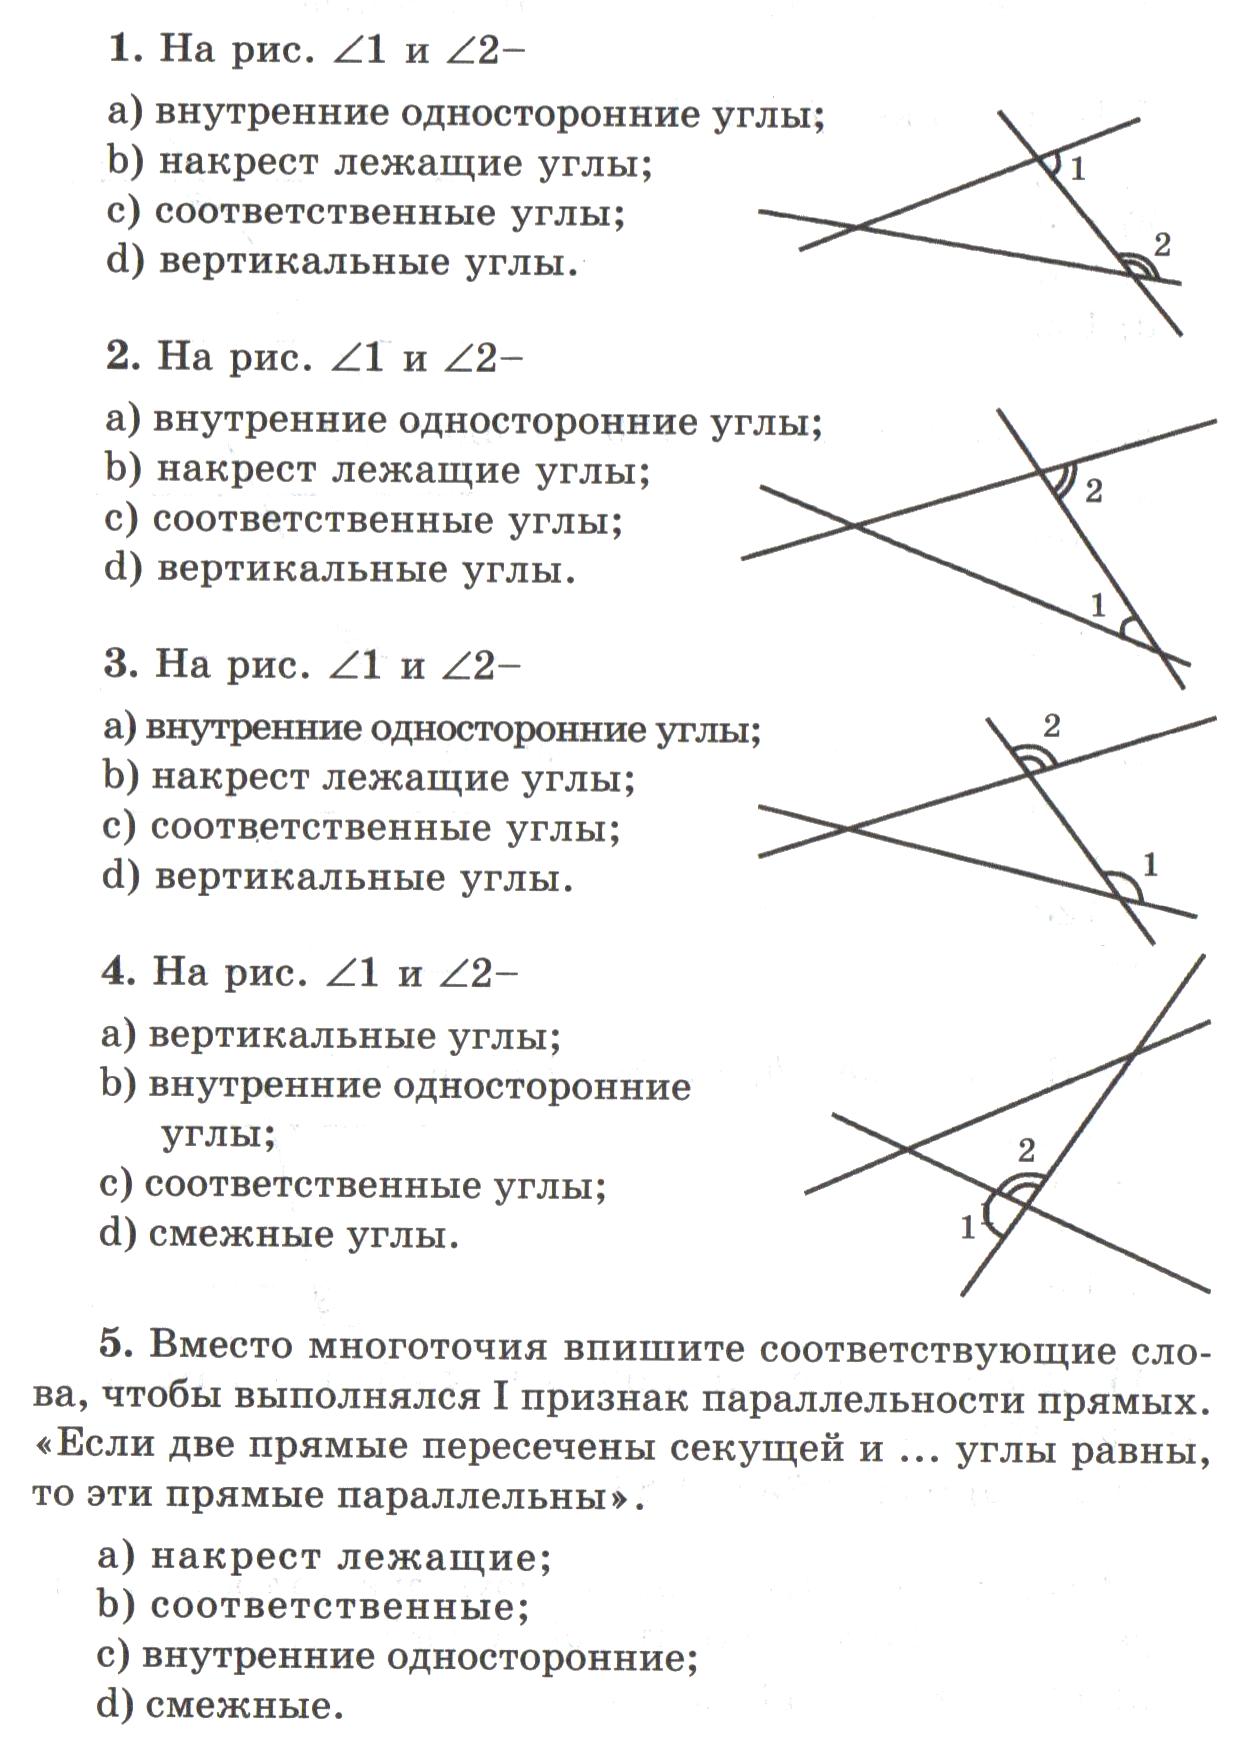 Признаки параллельности геометрия 7 класс